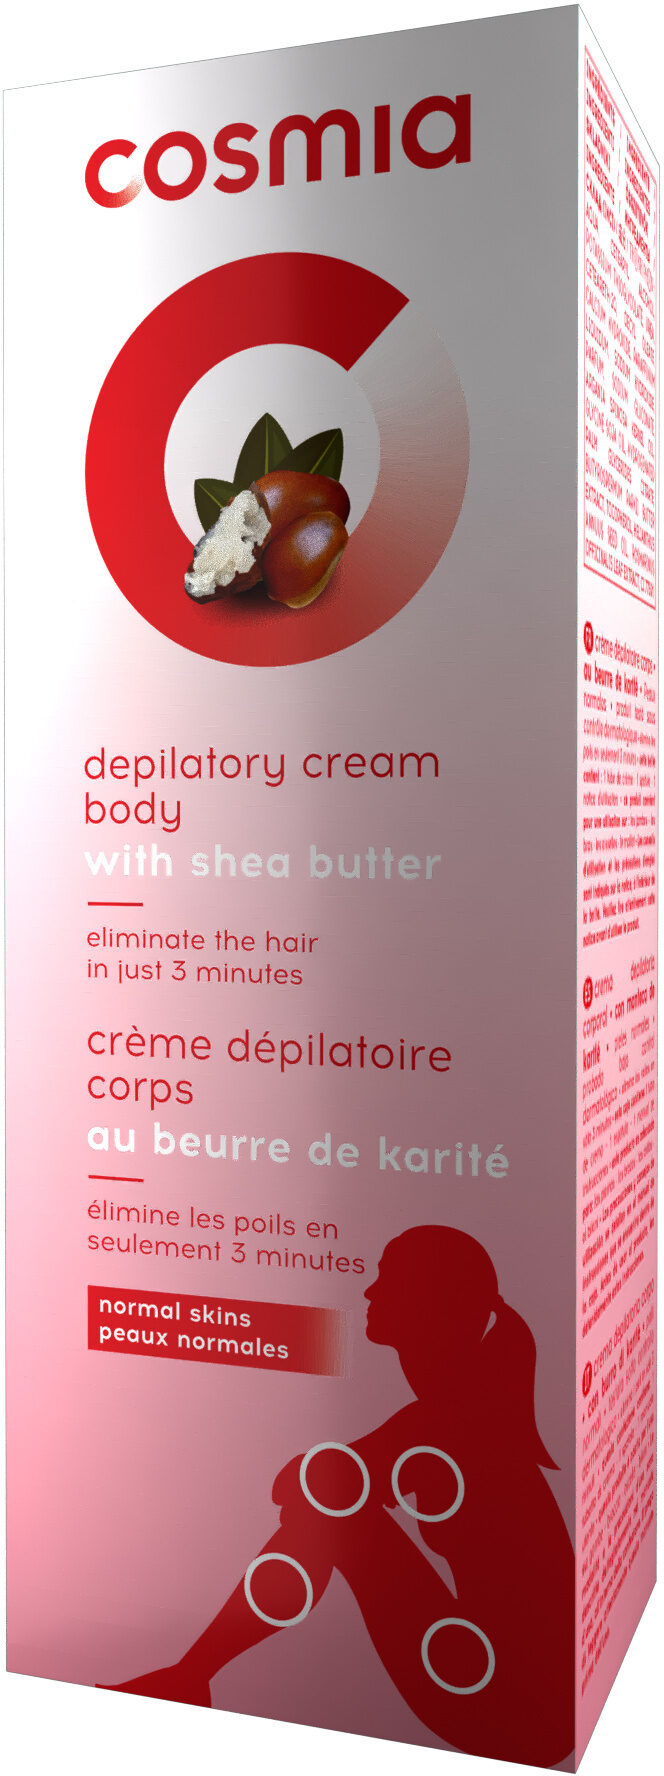 Crème dépilatoire corps au beurre de karité - Tuote - fr